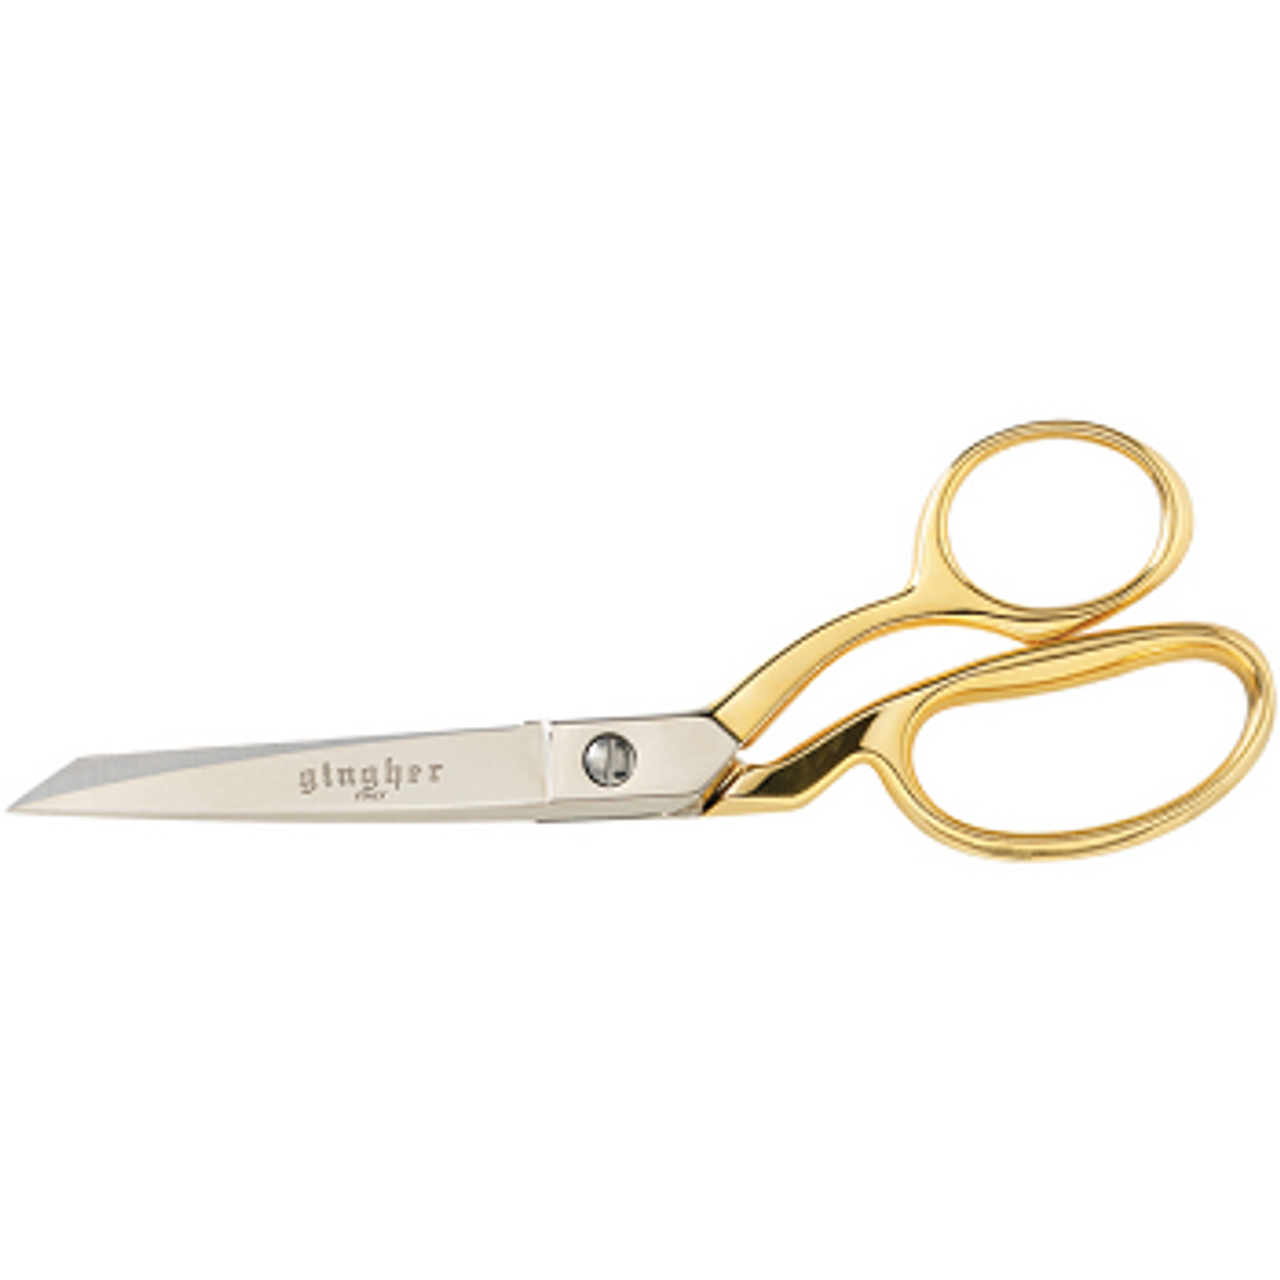 Left Handed Scissors by Kai, Dressmaking Shears LH Scissors 8 1/2